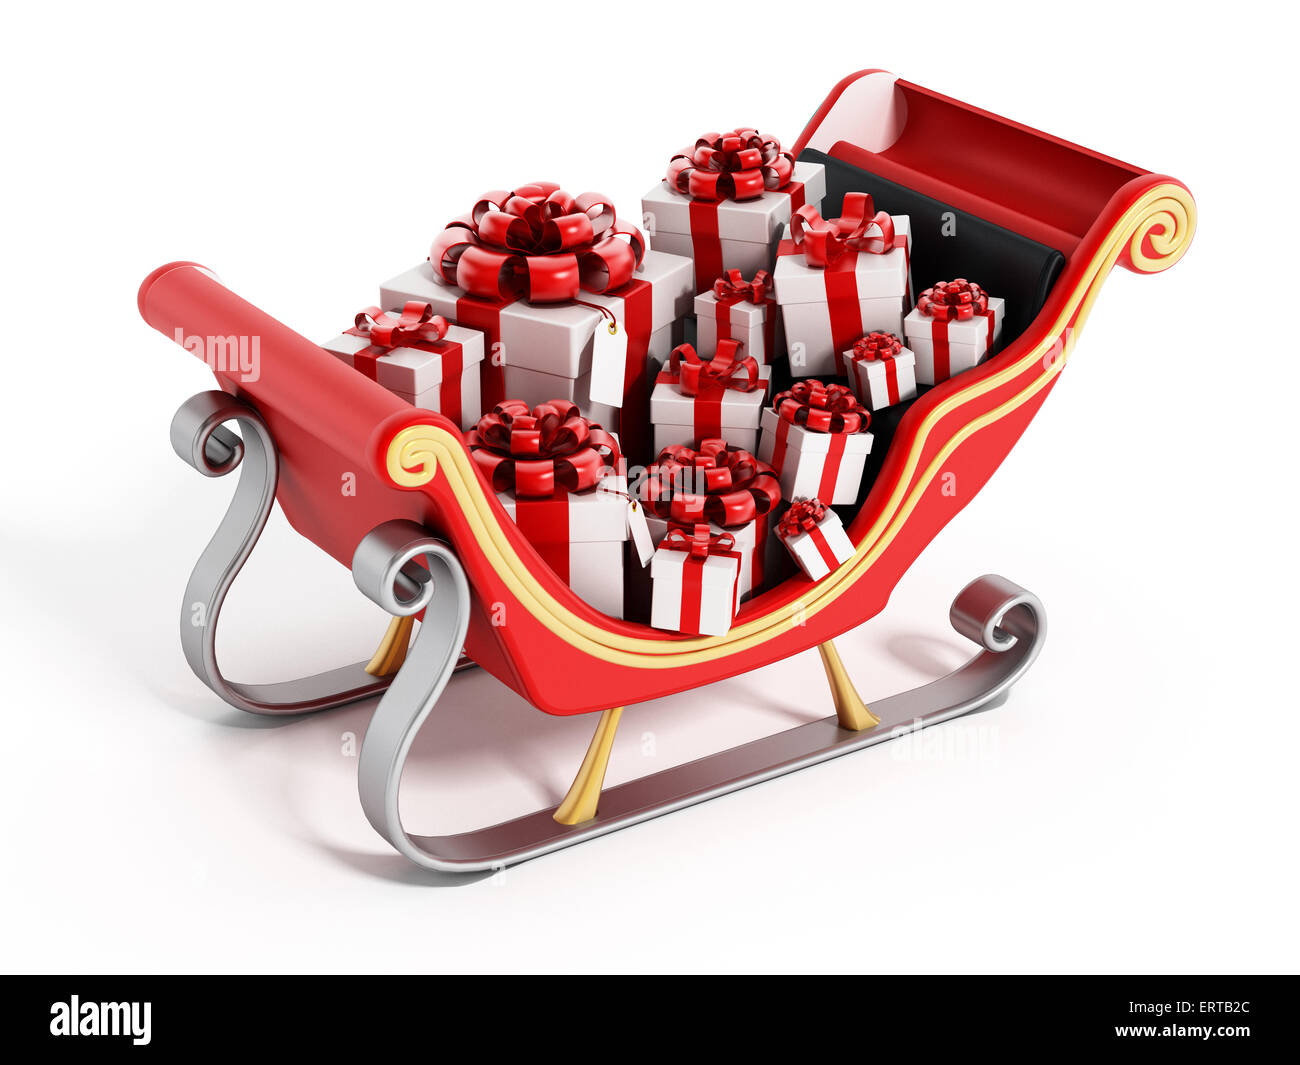 Babbo Natale con la slitta piena di regali isolati su sfondo bianco Foto Stock